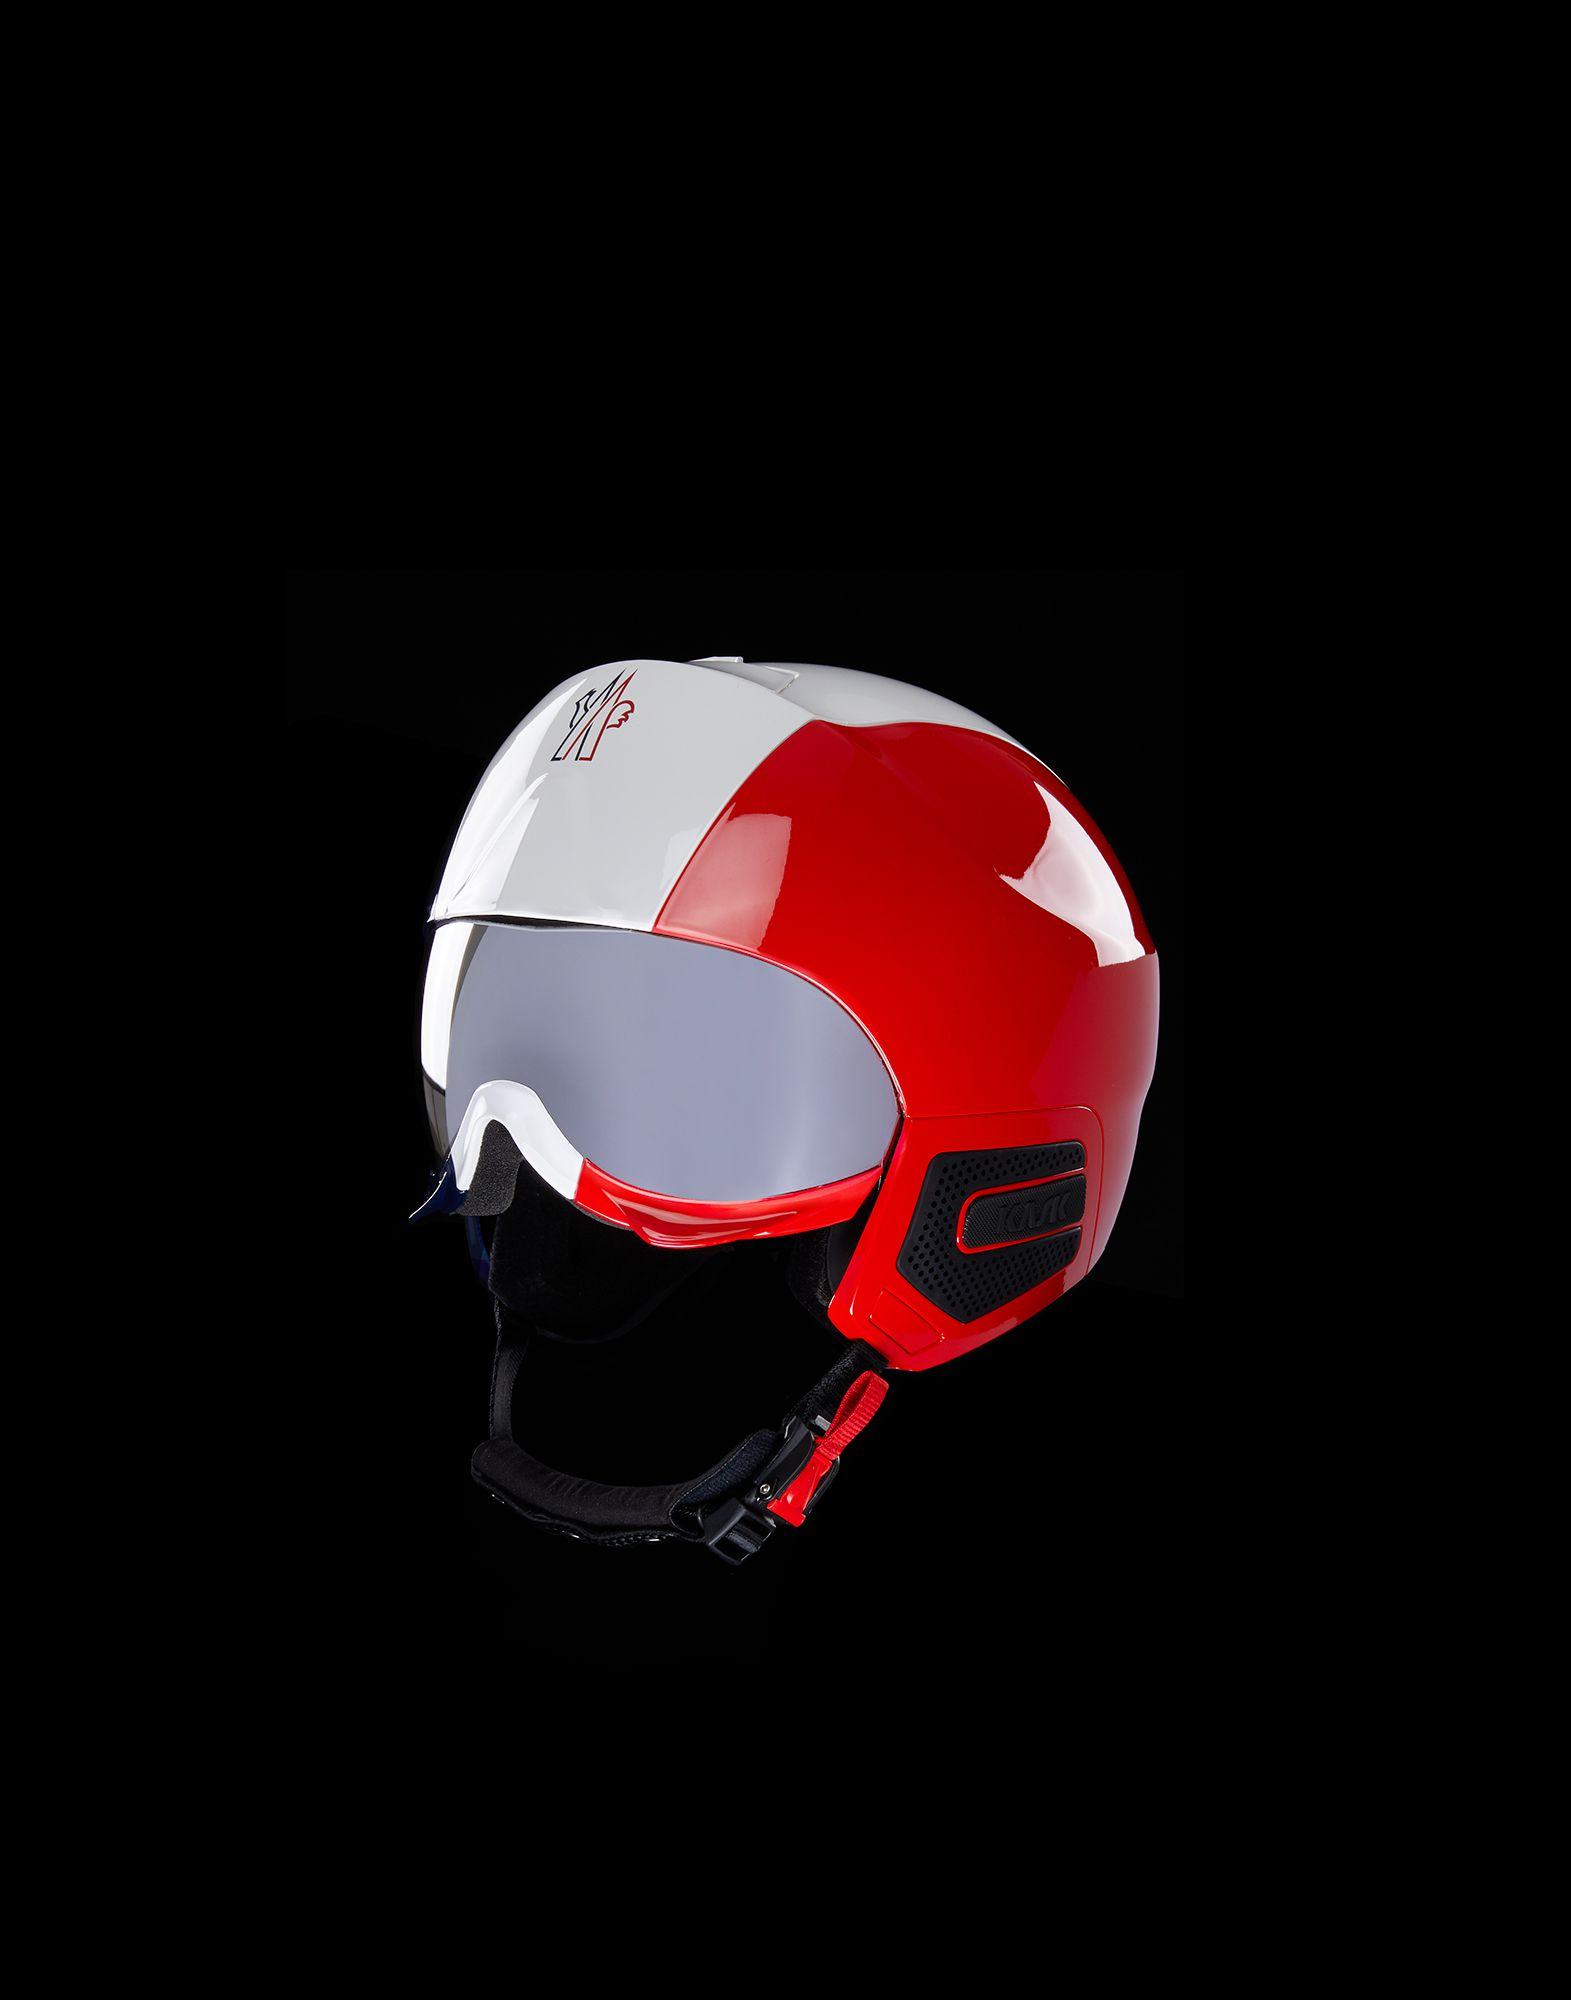 3 MONCLER GRENOBLE Ski Helmet in Red (Black) | Lyst